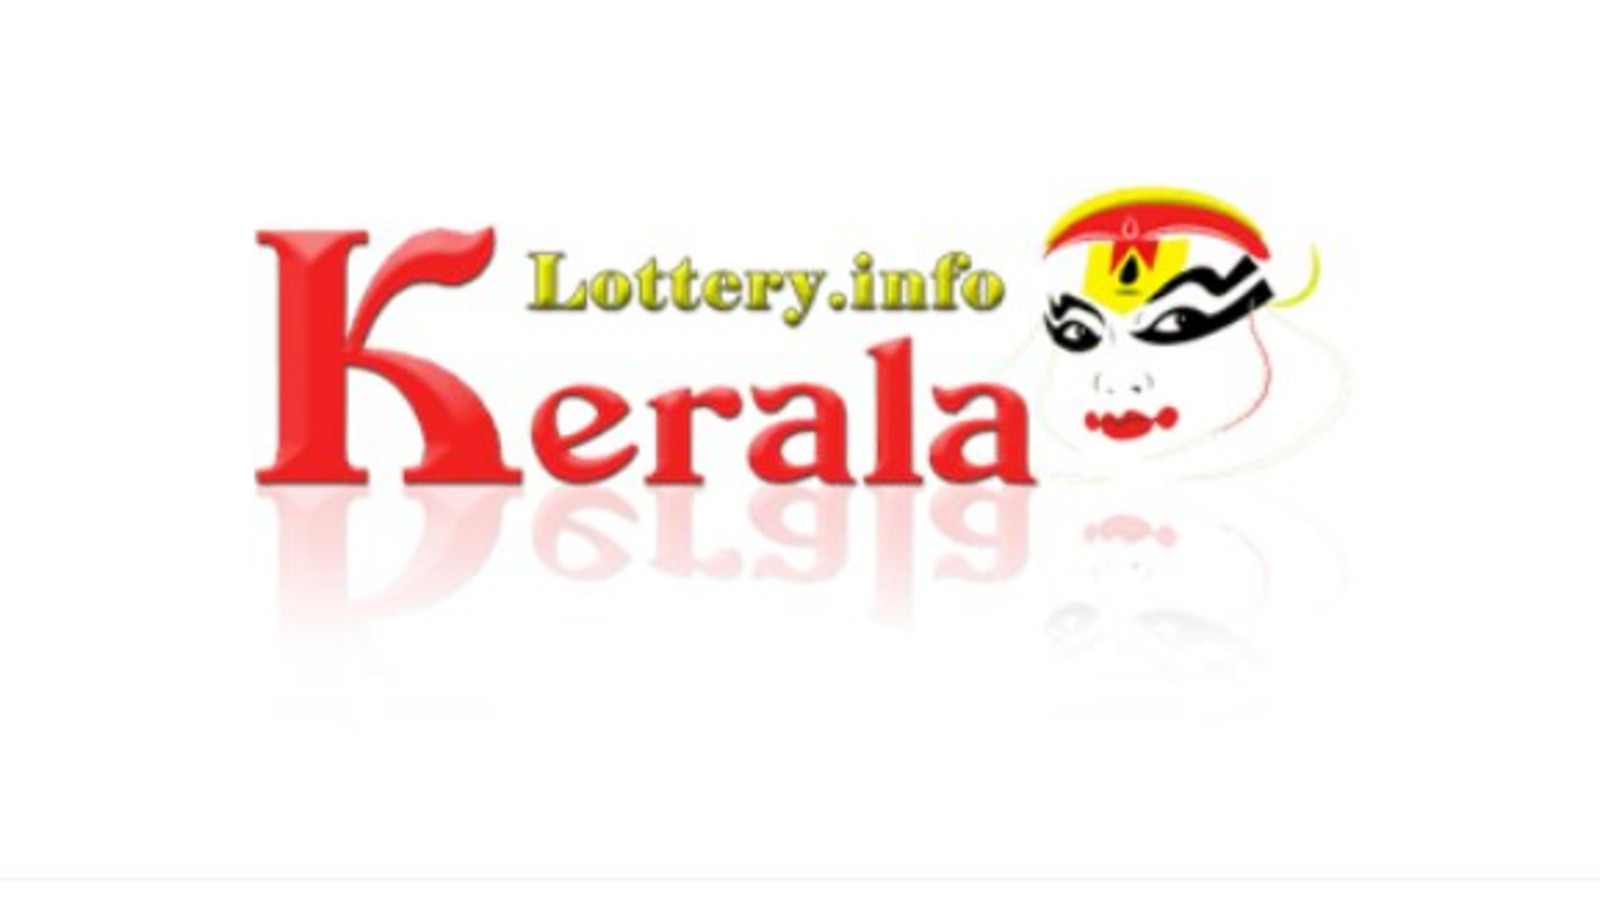 喀拉拉邦彩票 Karunya plus KN-519 4 月 25 日开奖结果：此彩票号码获得 ₹80 十万卢比的一等奖